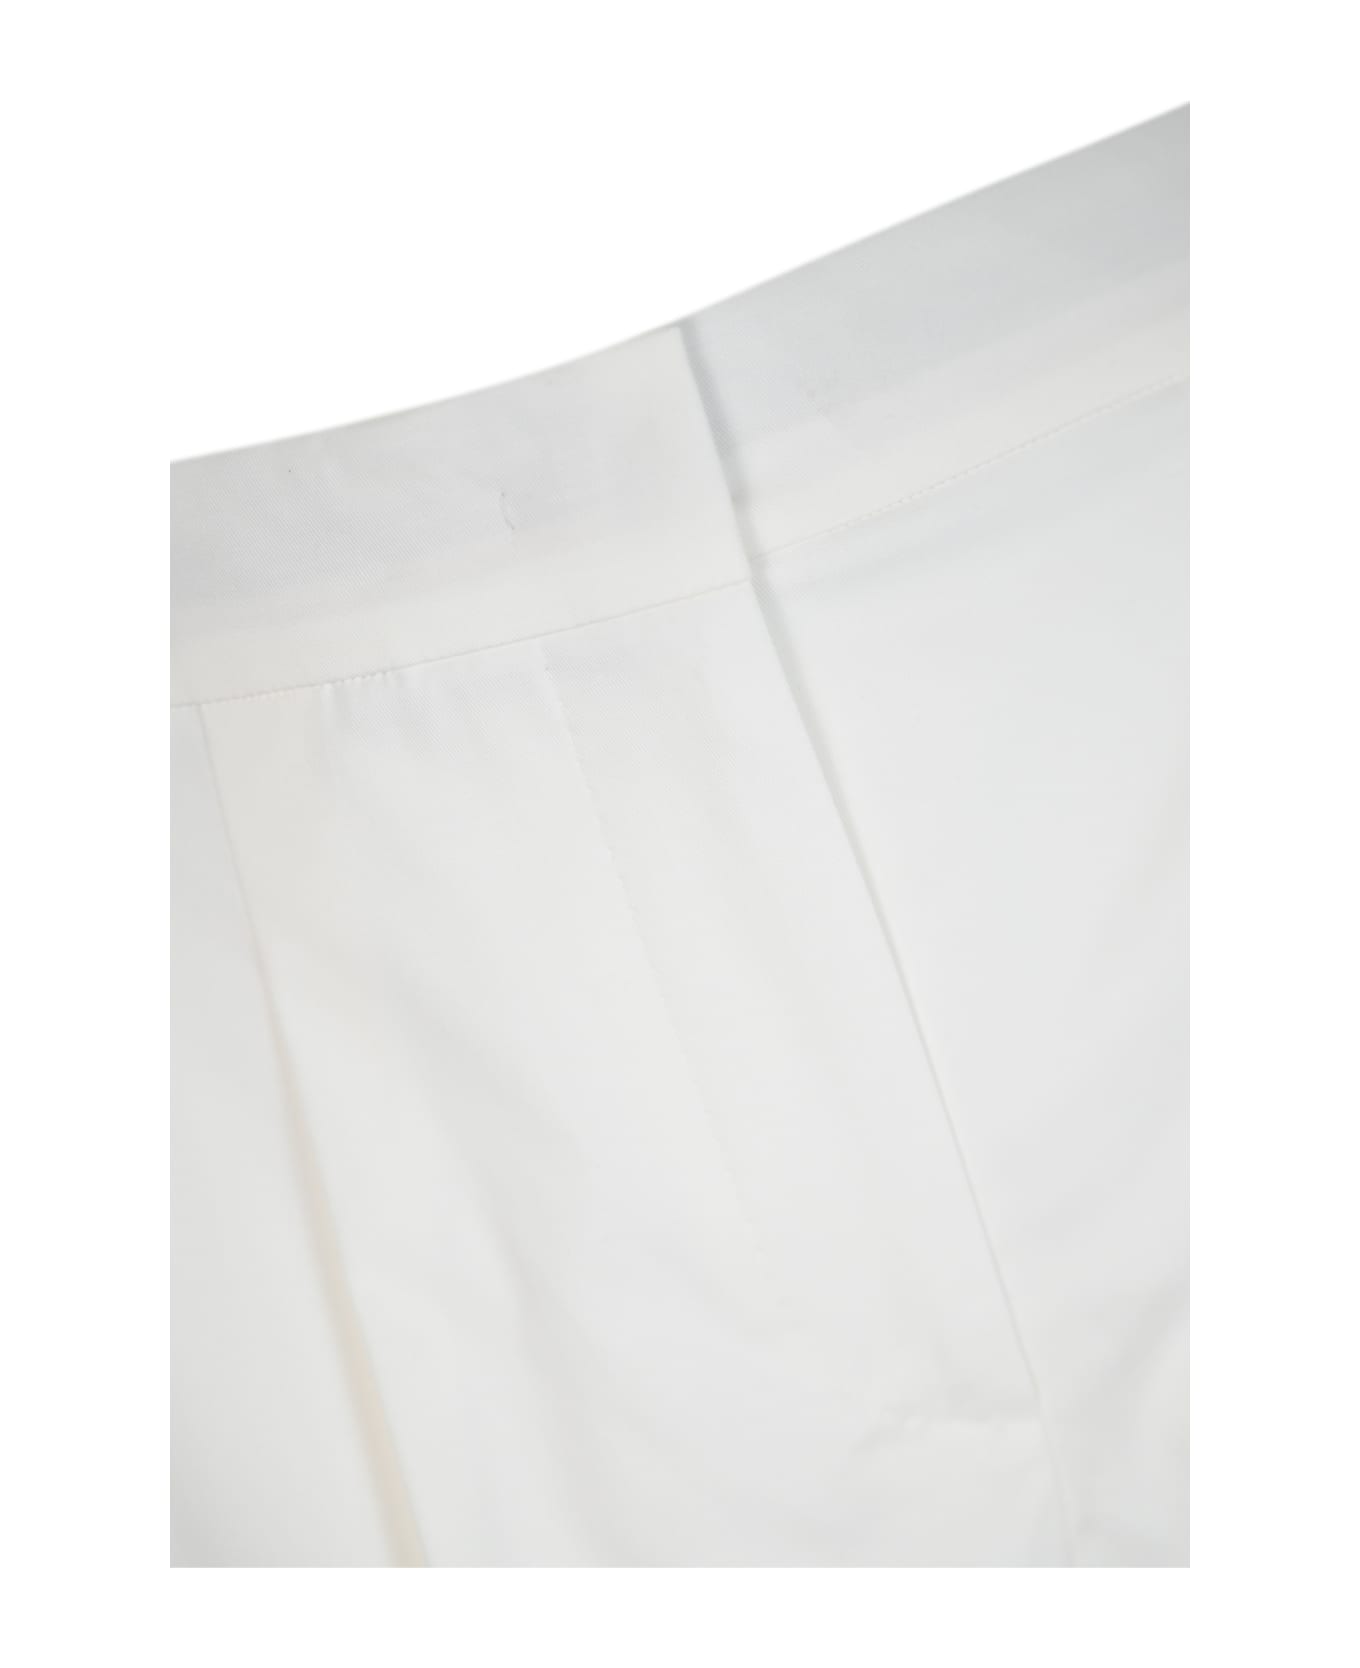 Max Mara Studio White 'adria' Cotton Shorts - Bianco ショートパンツ